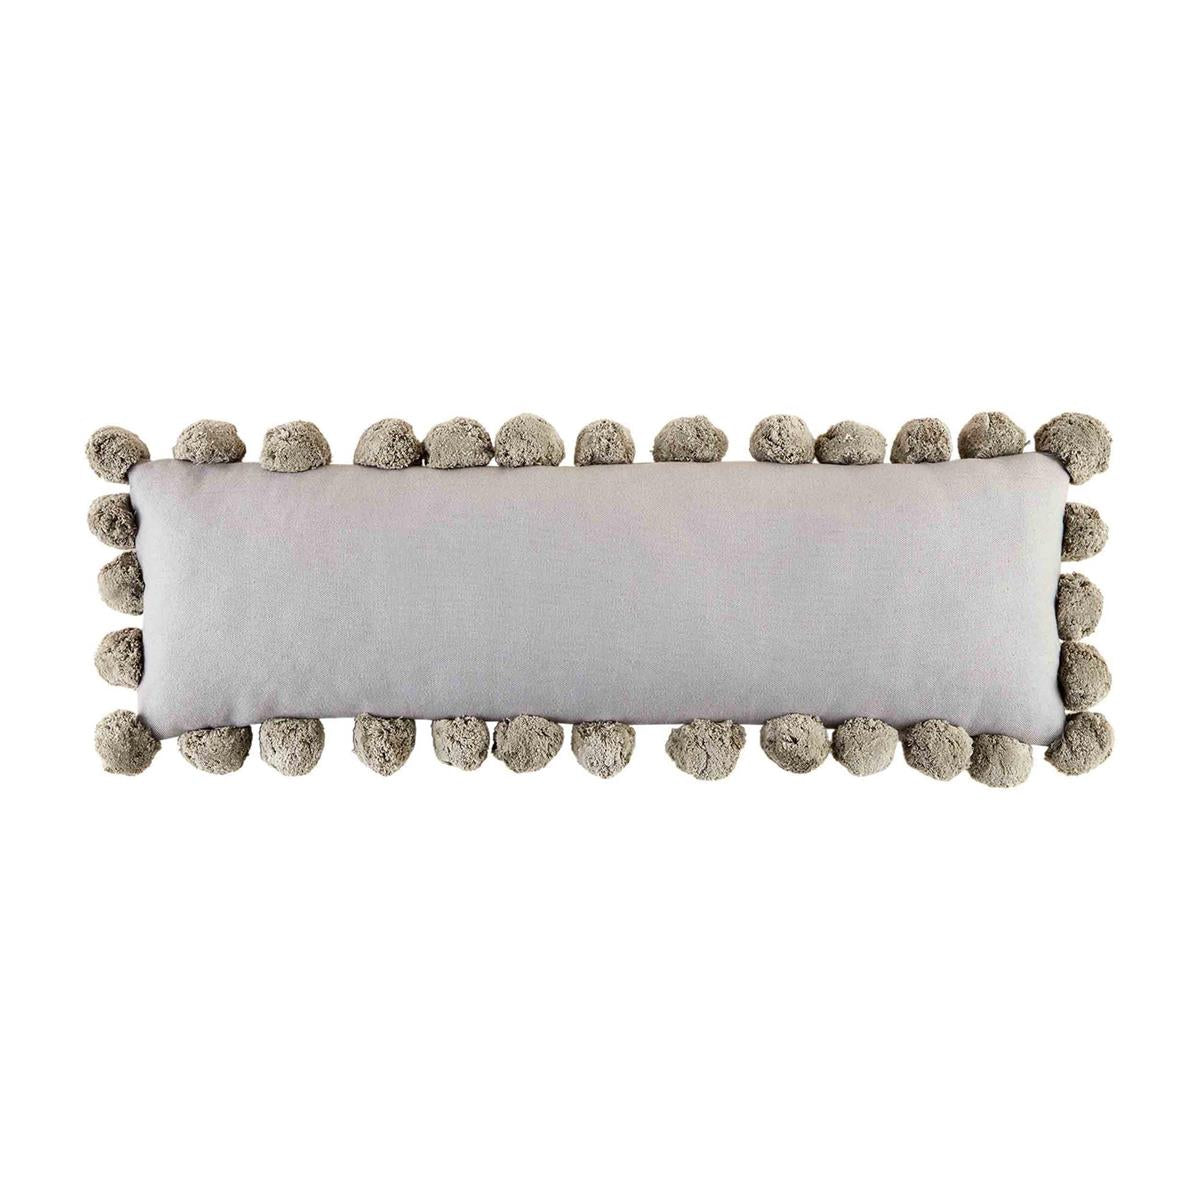 Mudpie- Gray Pom-Pom Pillow #41600804